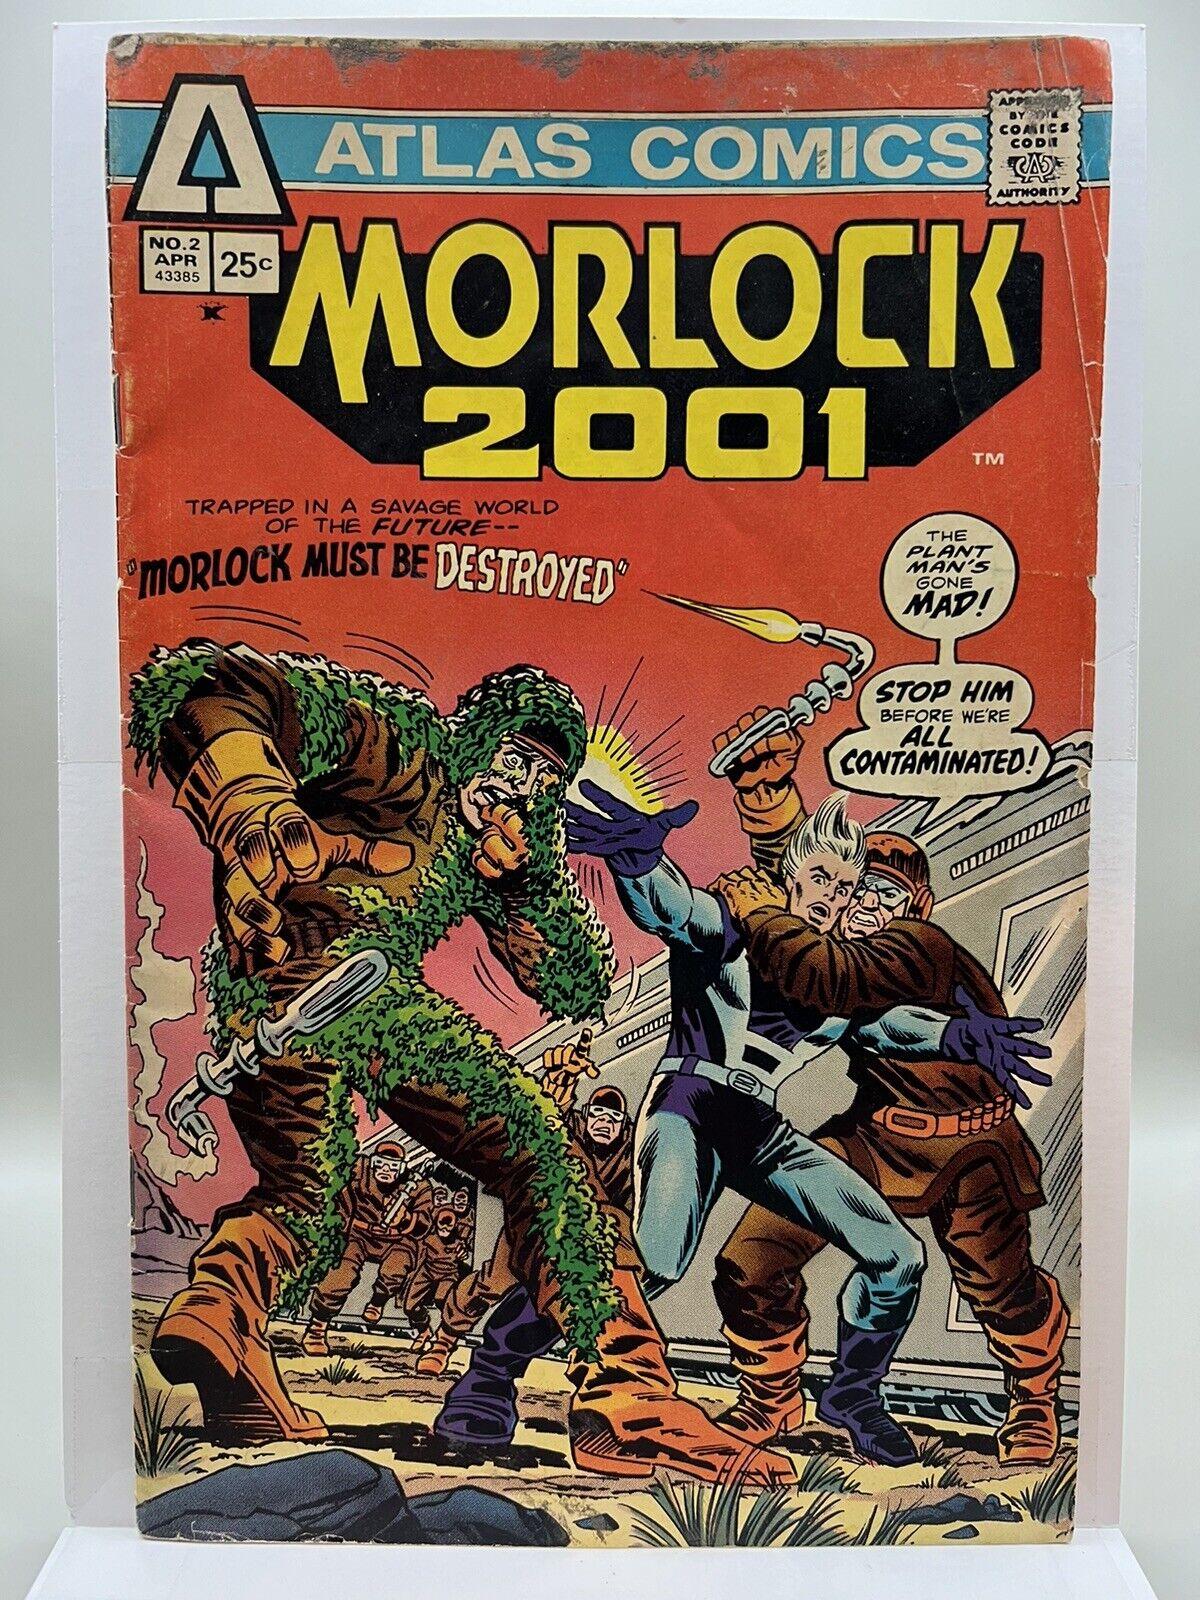 Morlock 2001 #2 * 1975 Atlas Comics (B) * LOW GRADE